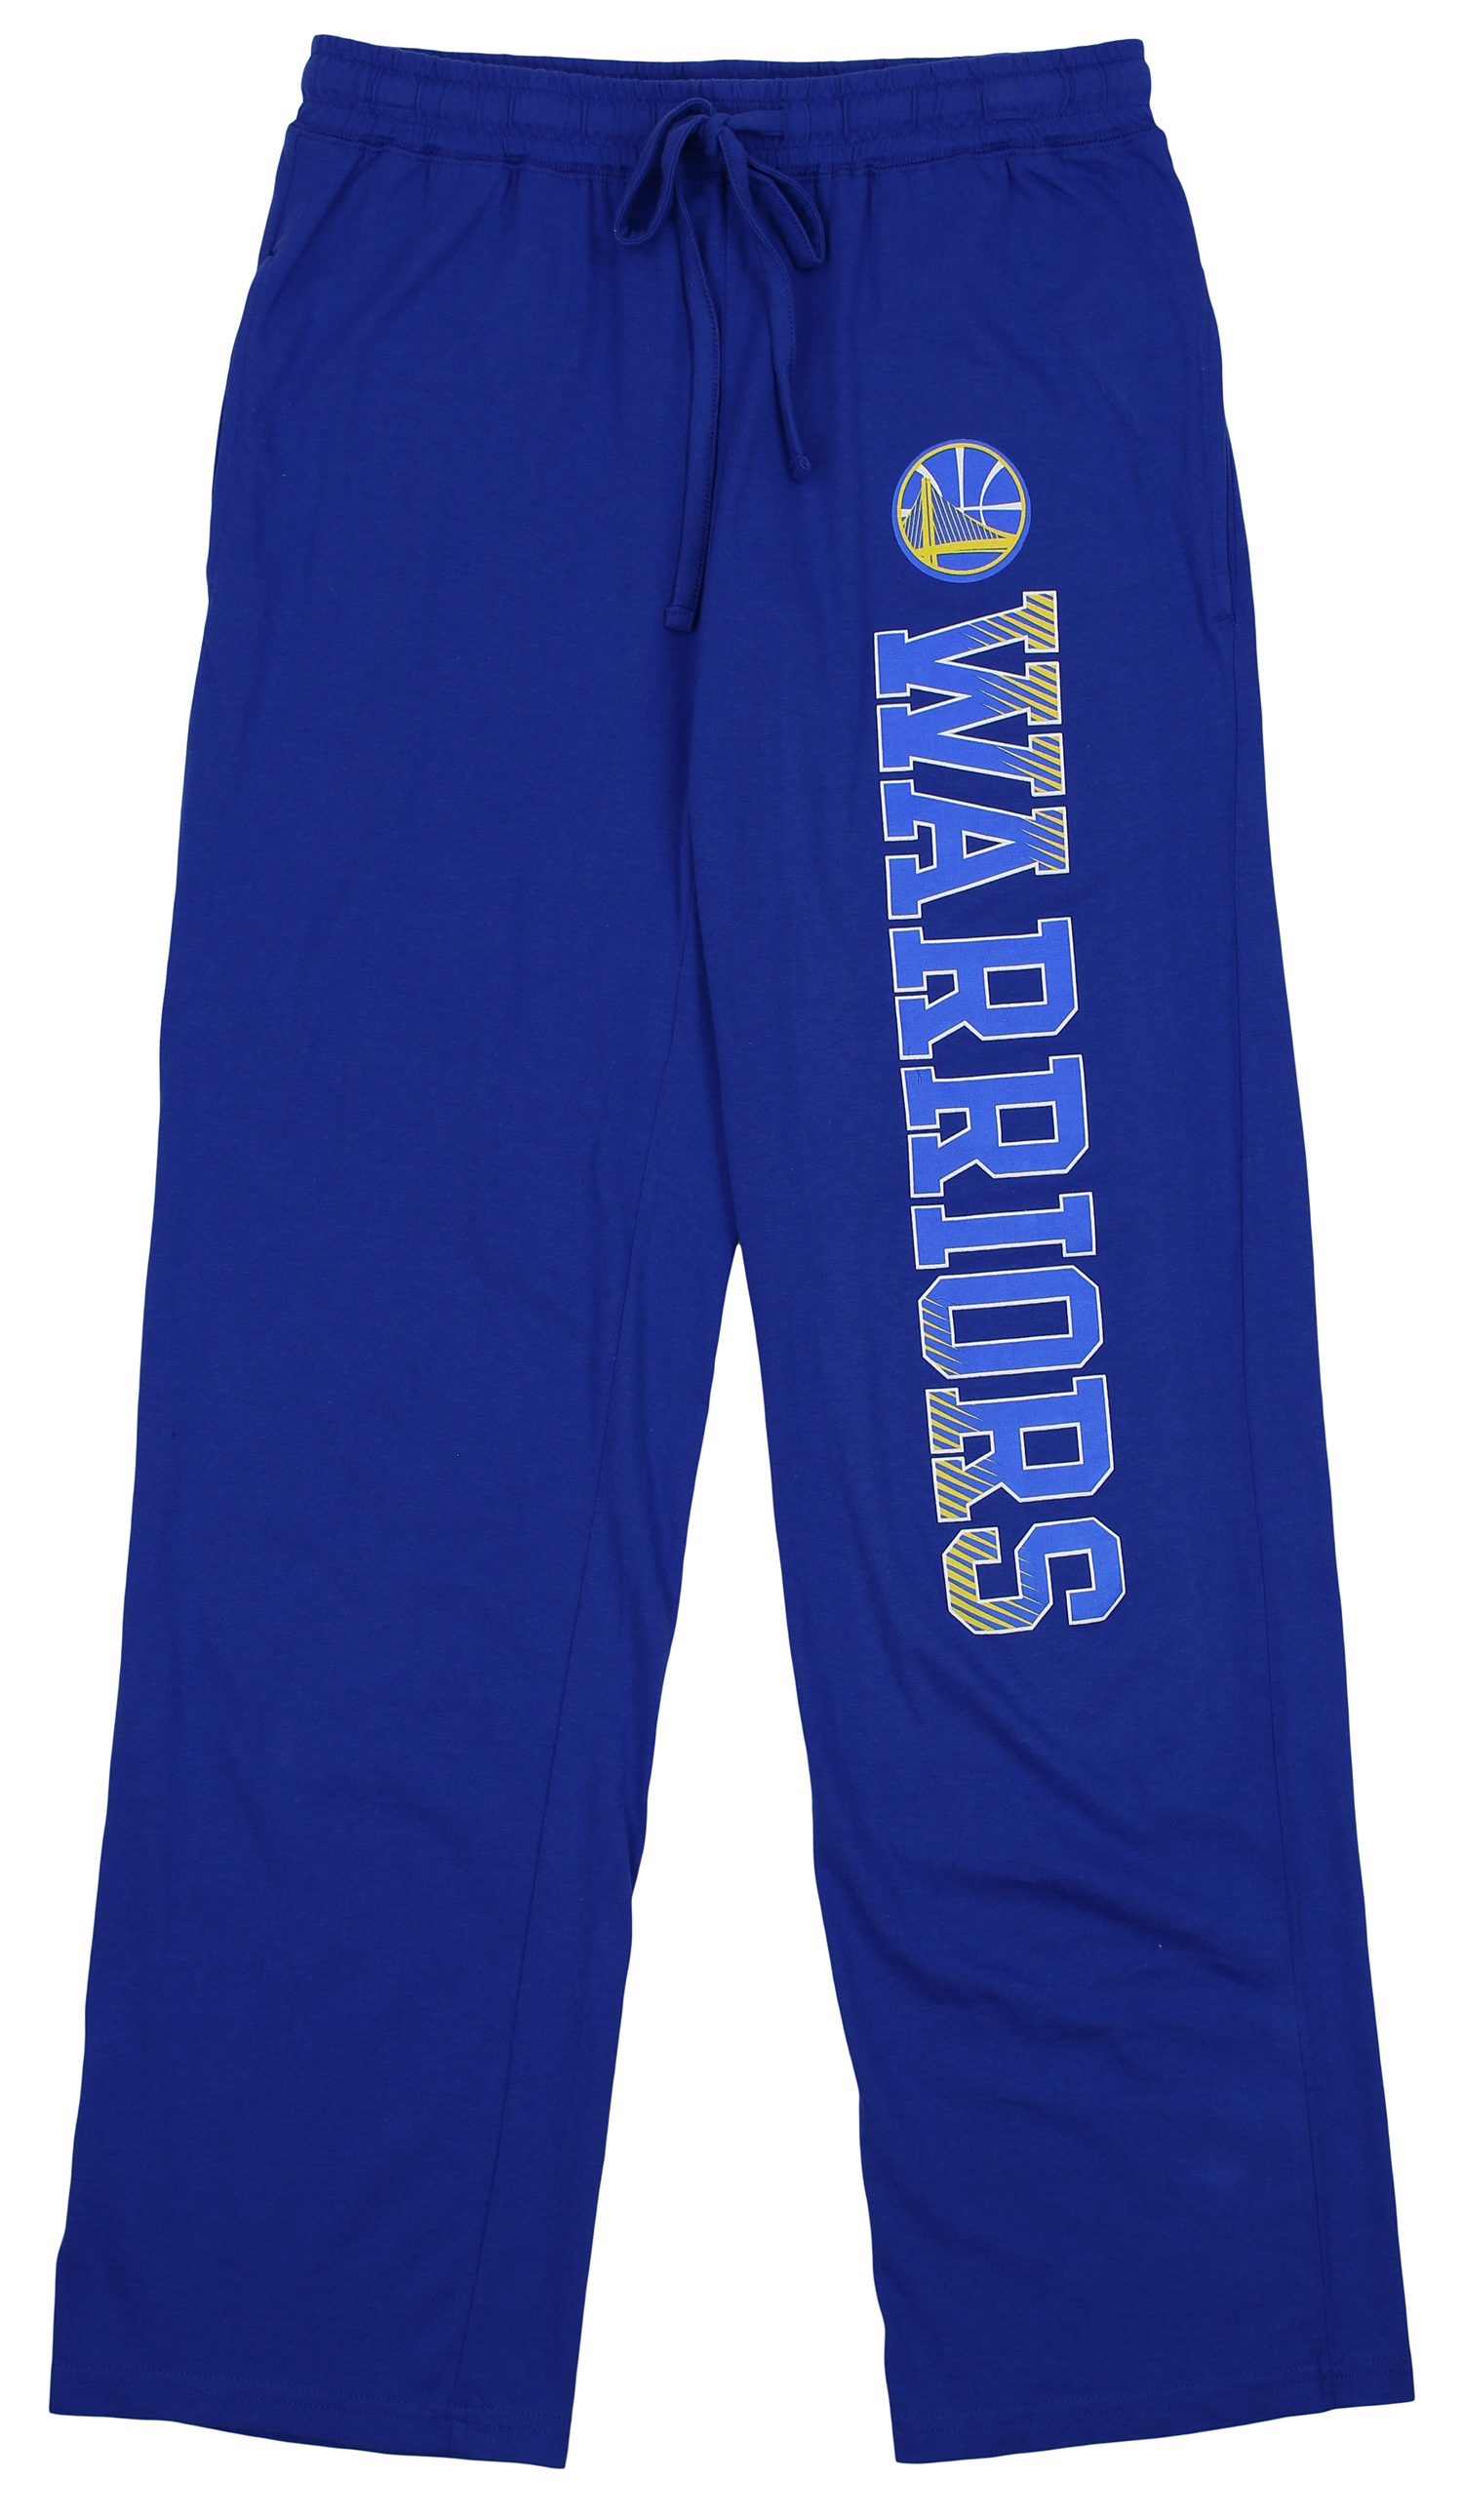 Concepts Sport NBA Women's Golden State Warriors Knit Pants | eBay